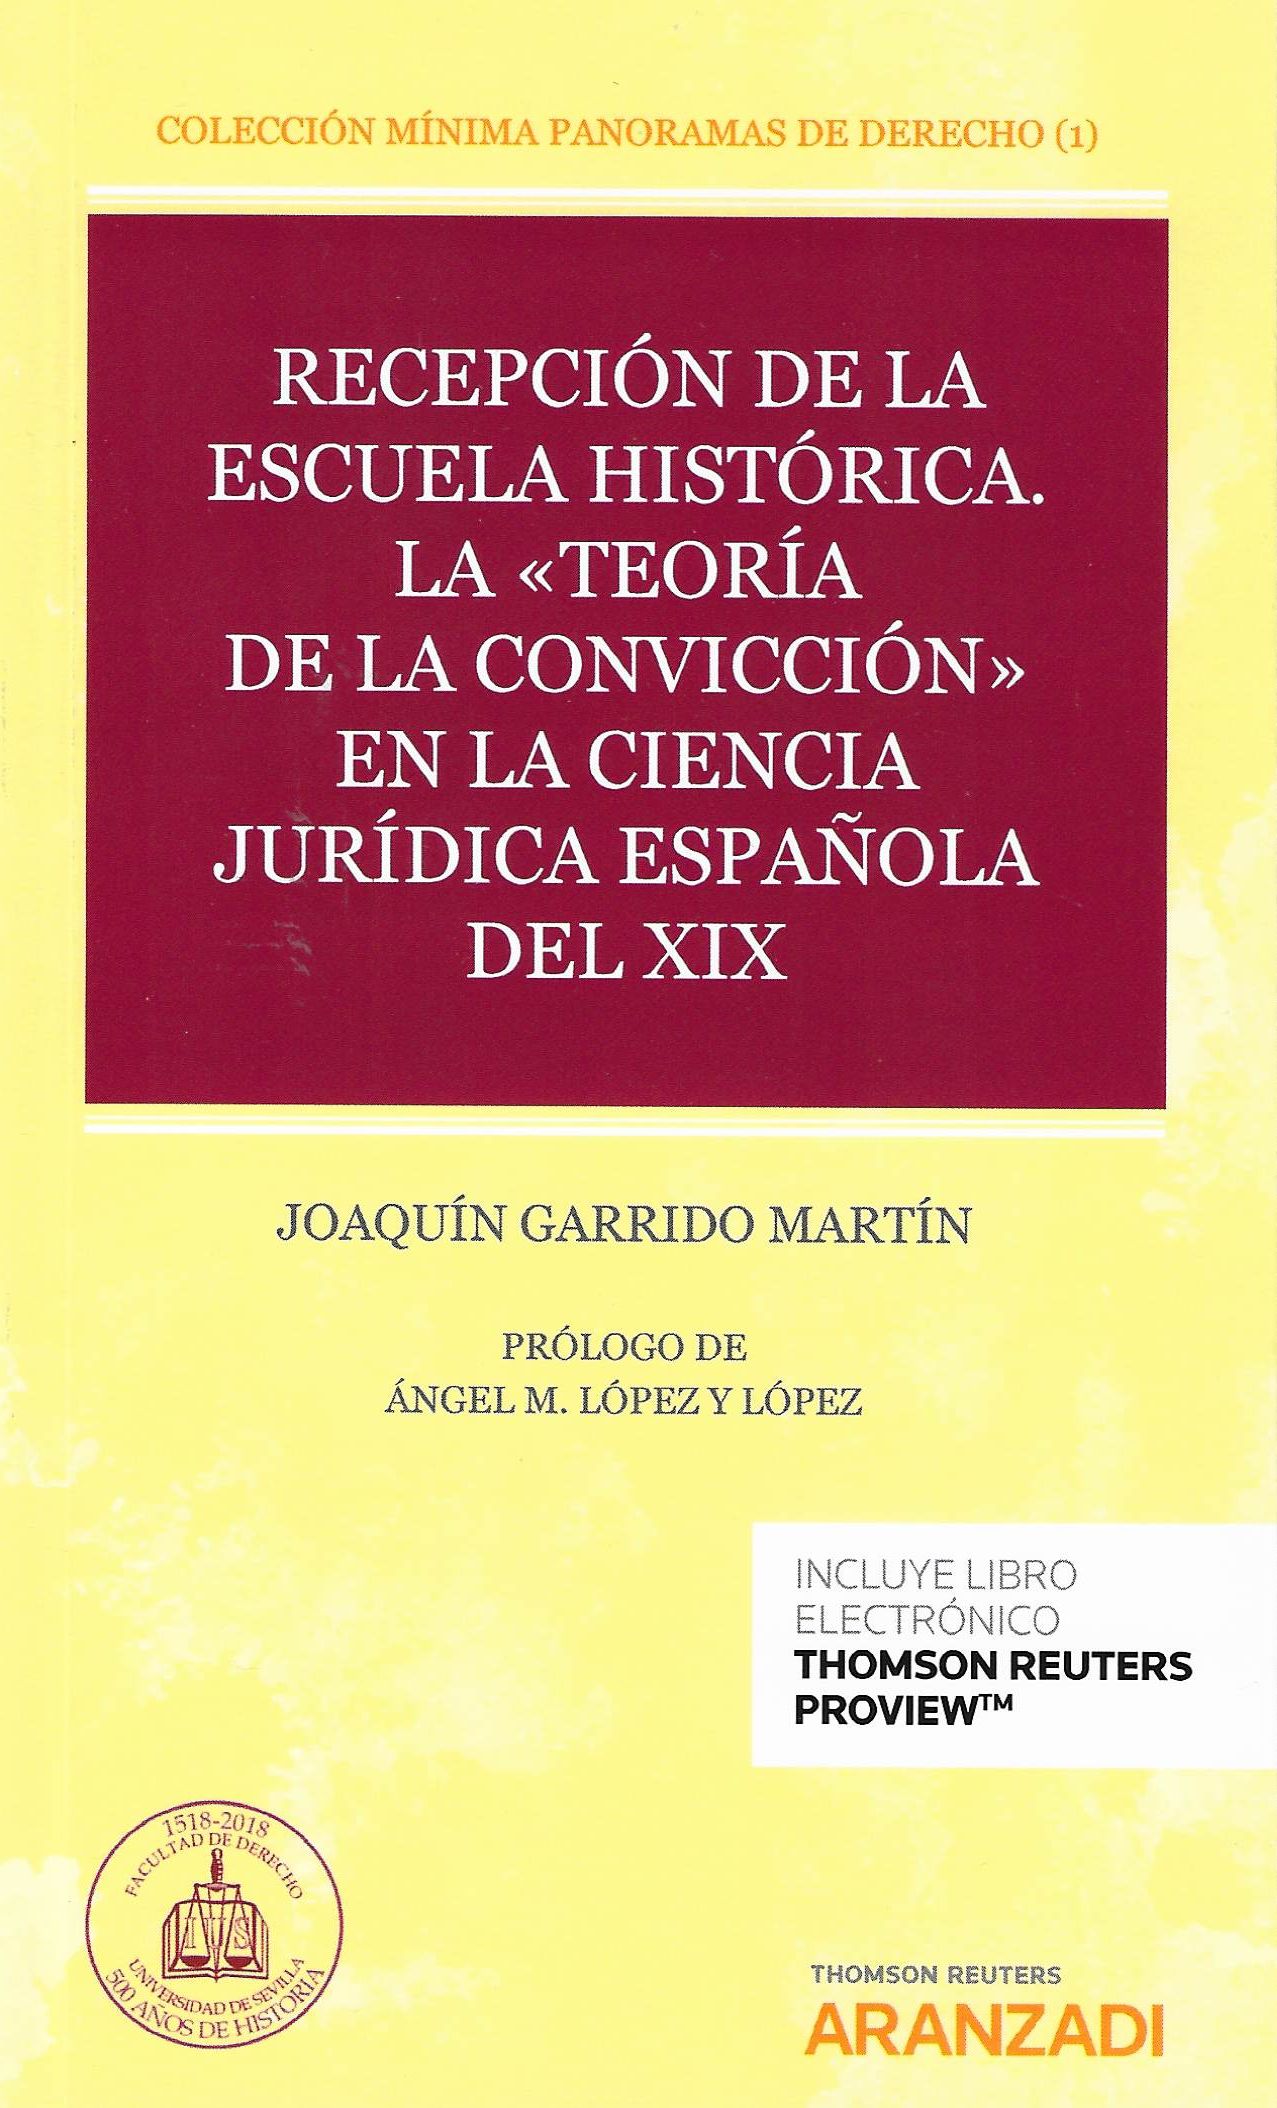 Imagen de portada del libro Recepción de la escuela histórica. La "teoría de la convicción" en la ciencia jurídica española del XIX